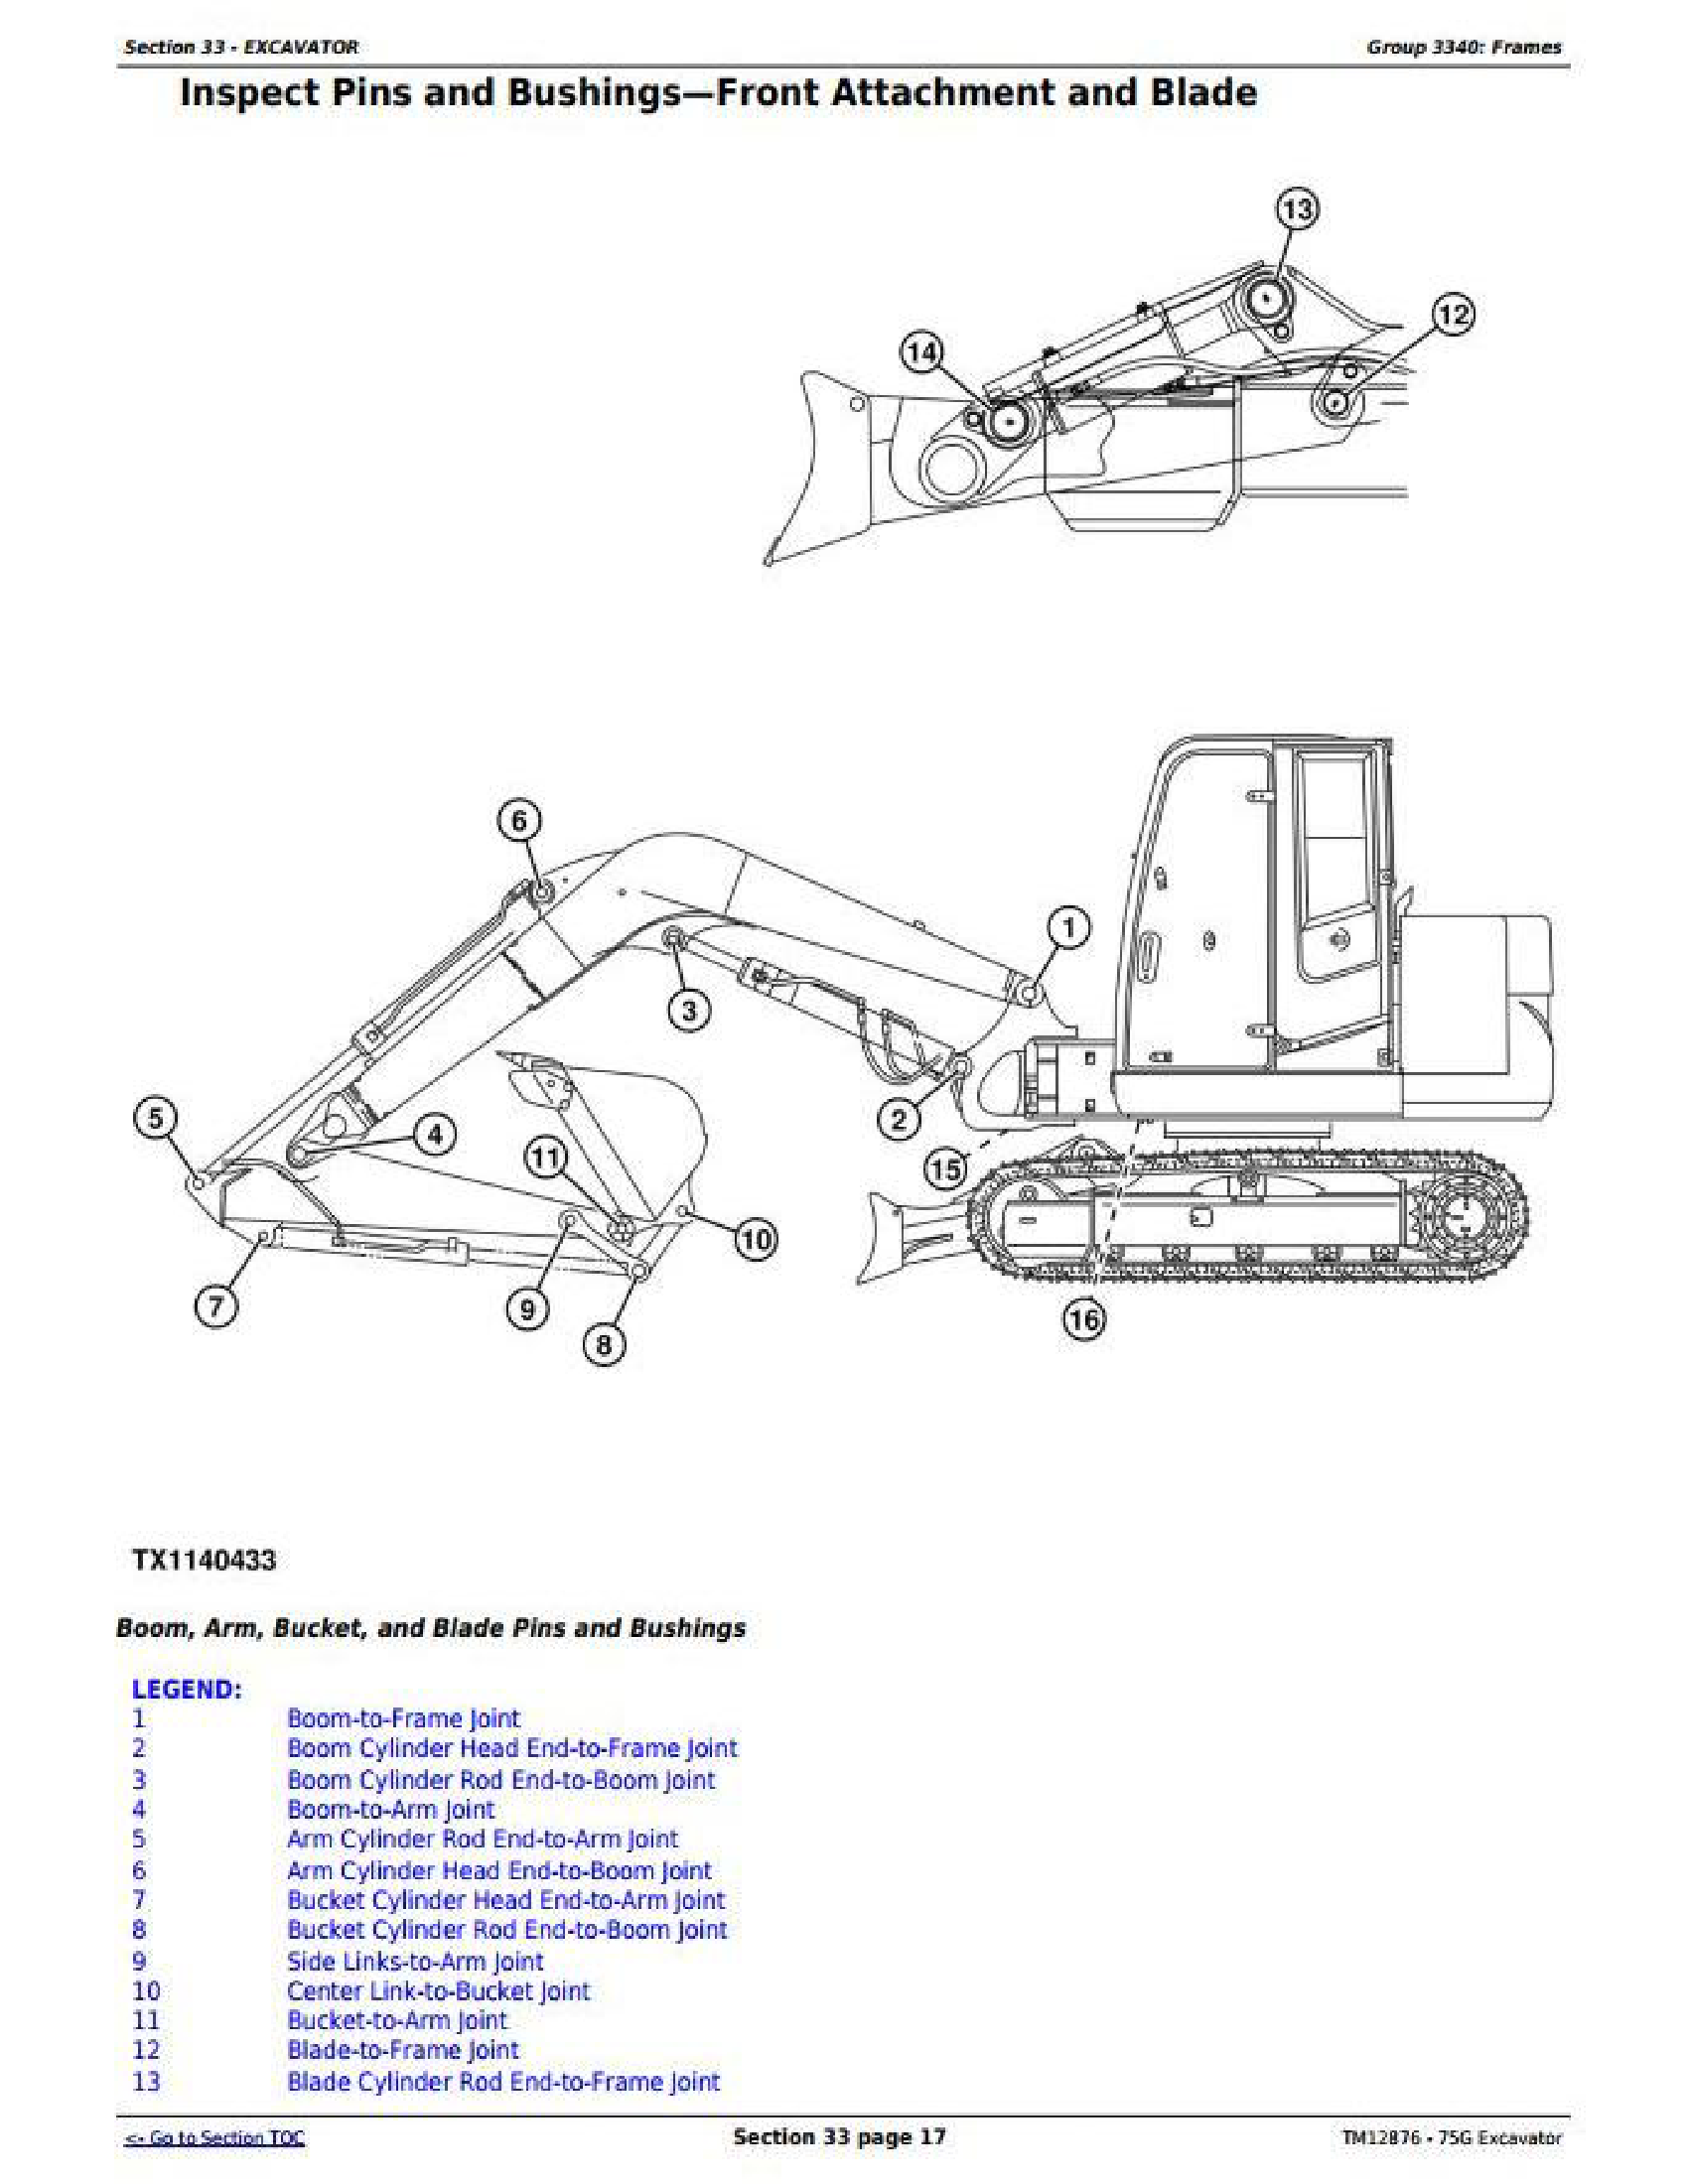 John Deere 9630 manual pdf